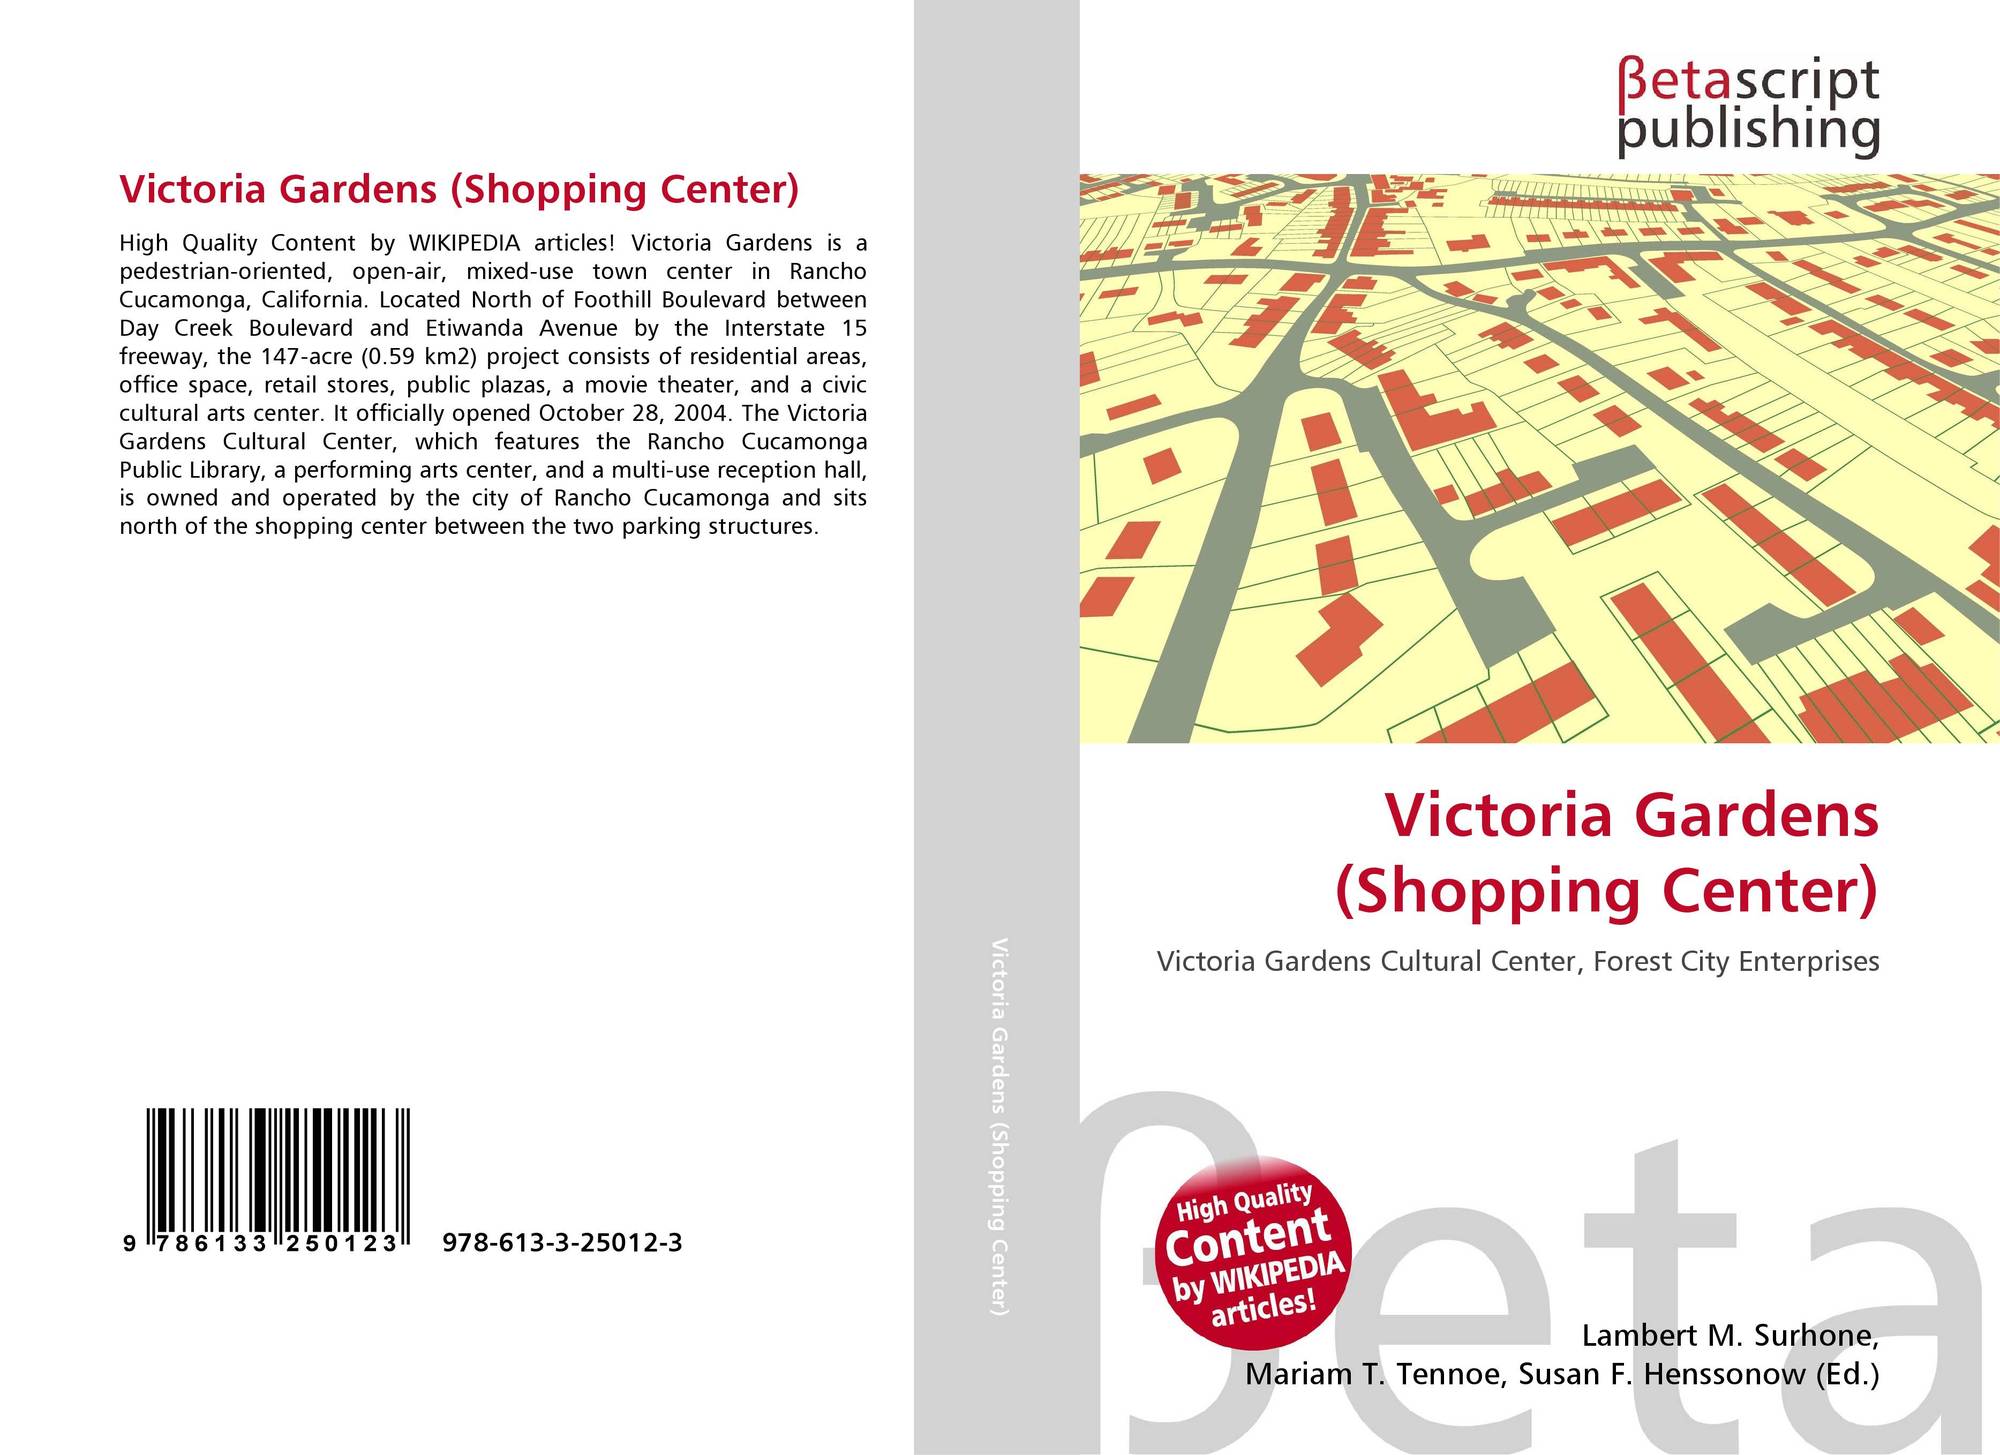 Victoria Gardens Shopping Center 978 613 3 25012 3 6133250127